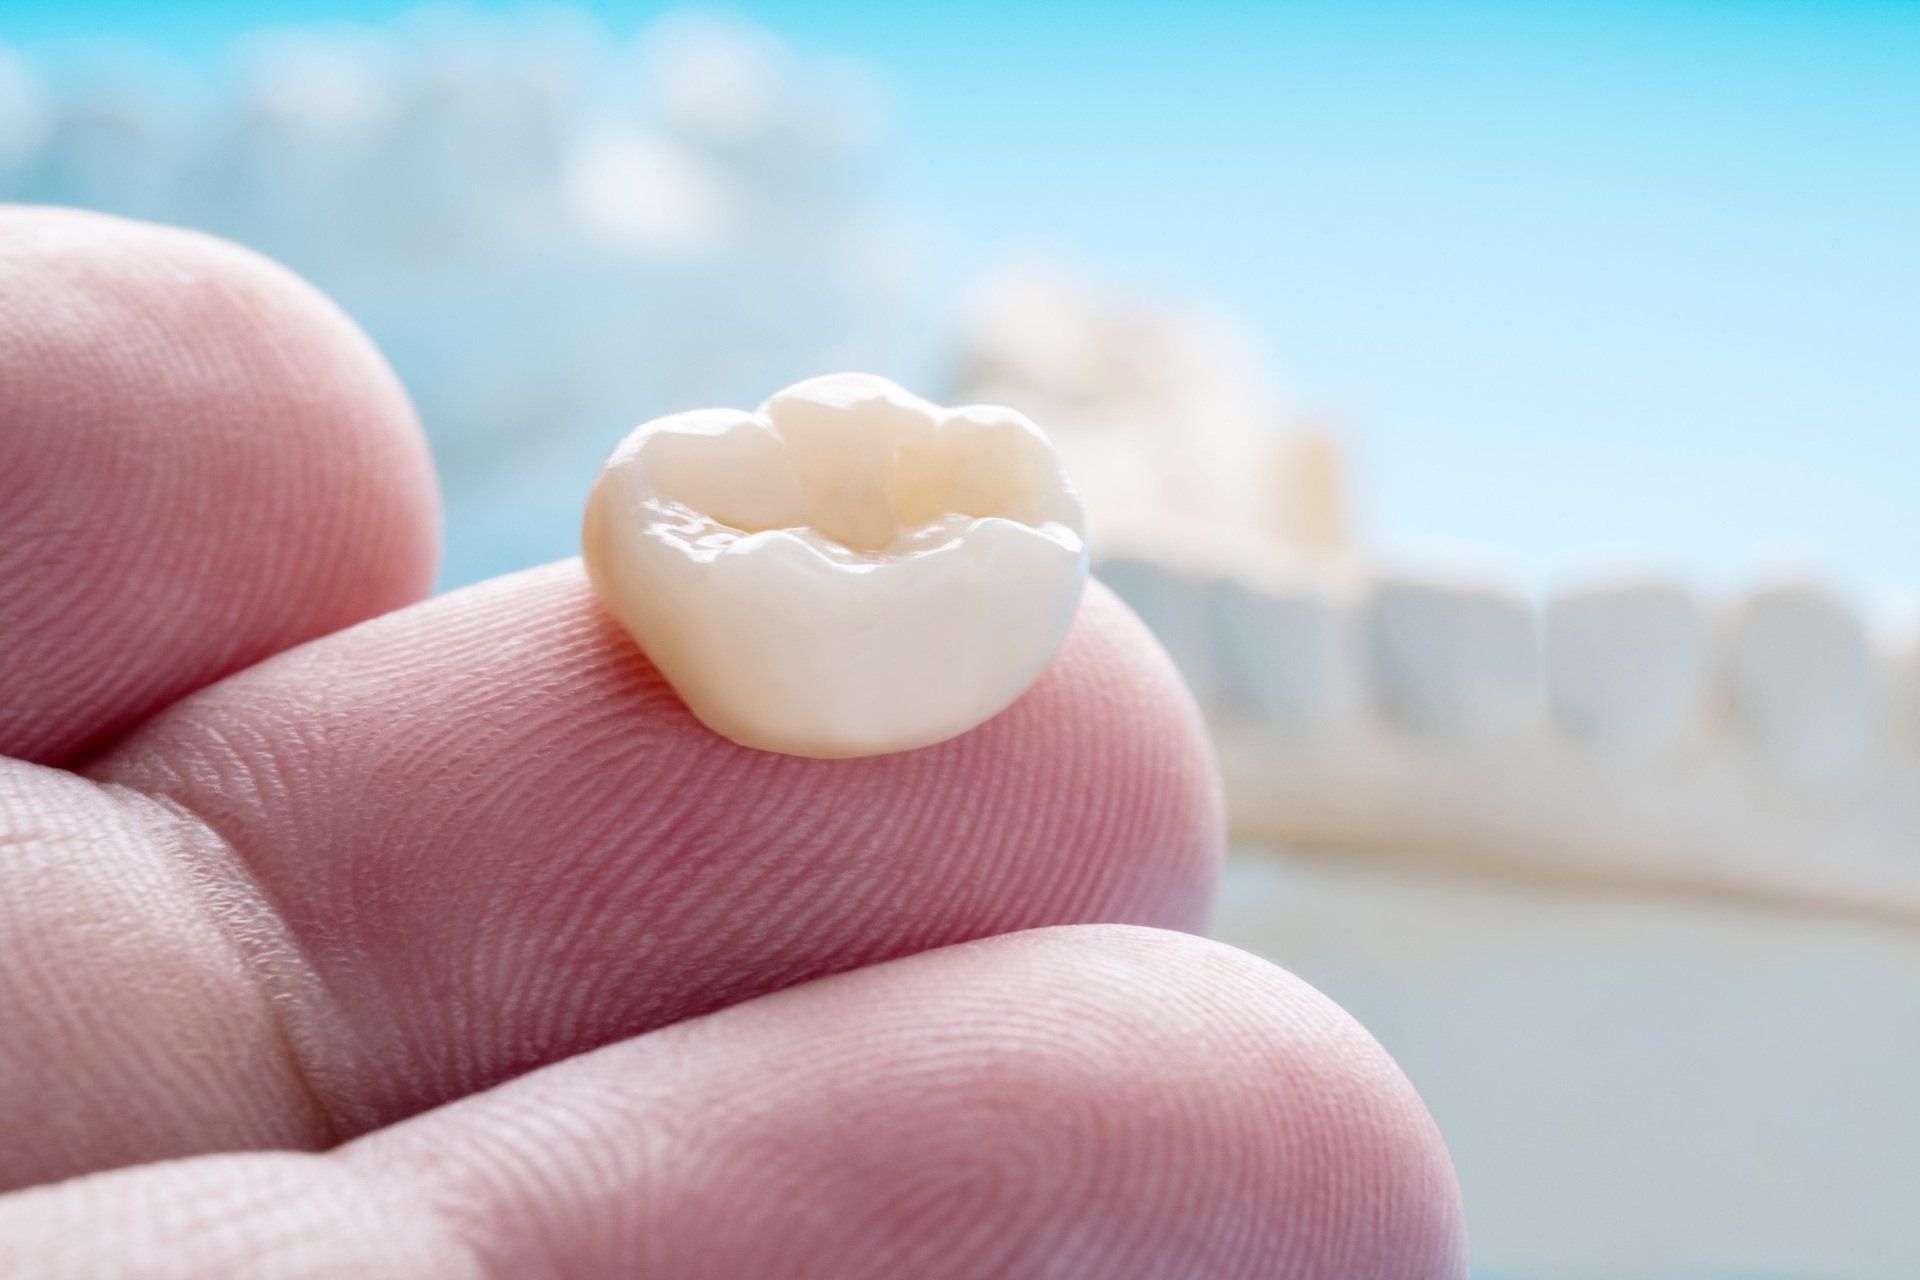 Dental Implant on fingertip